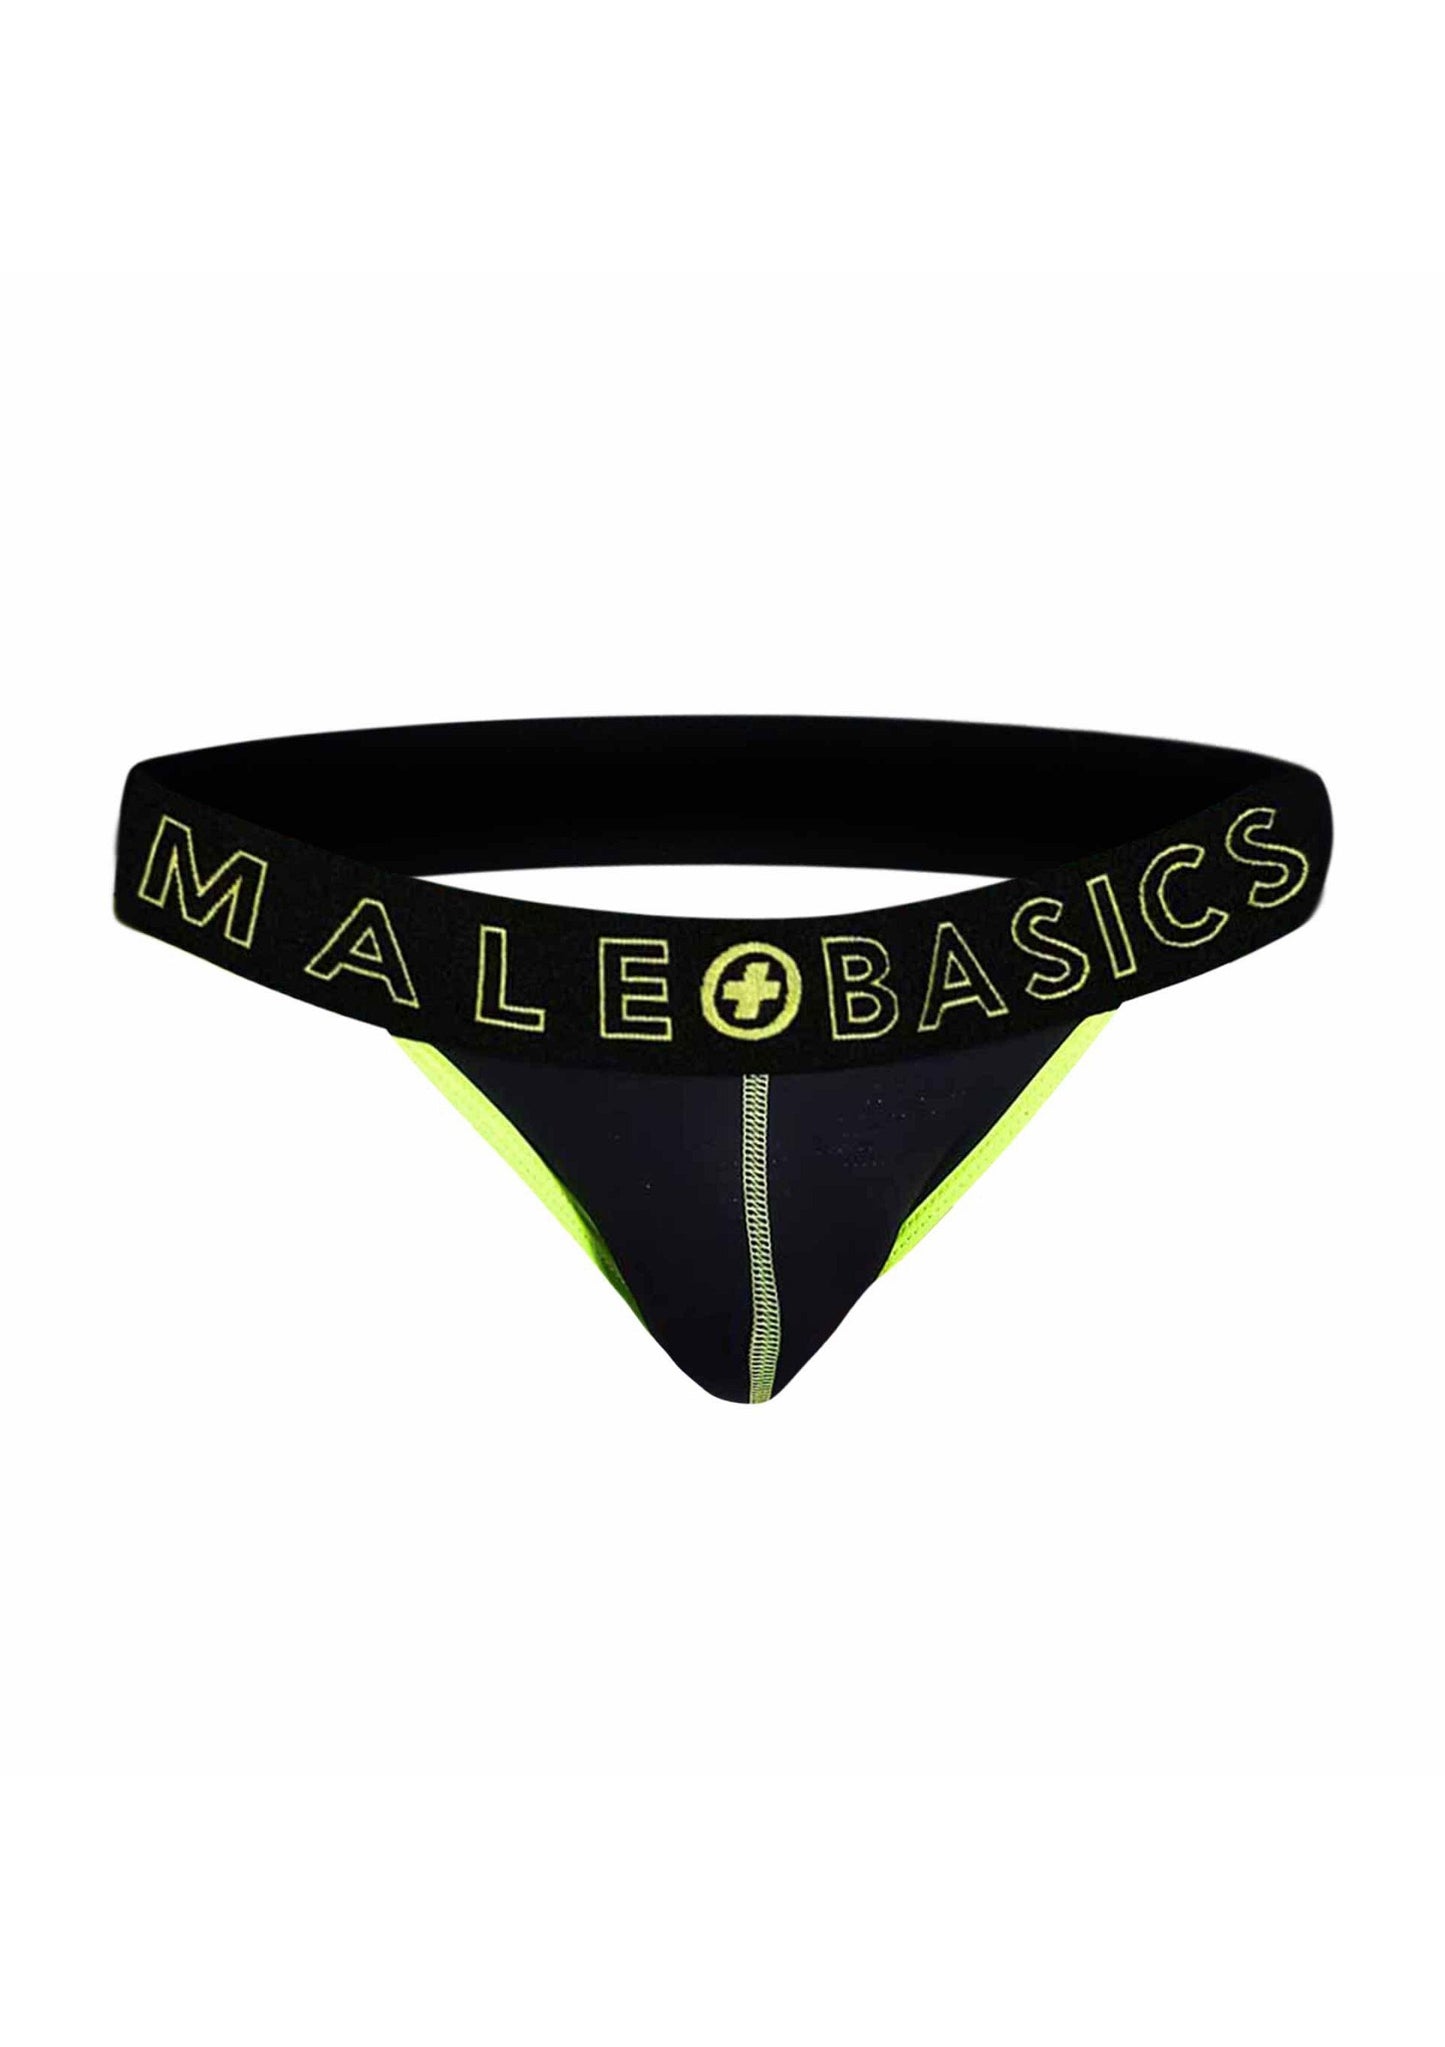 MaleBasics Neon Jock YELLOW S - 10